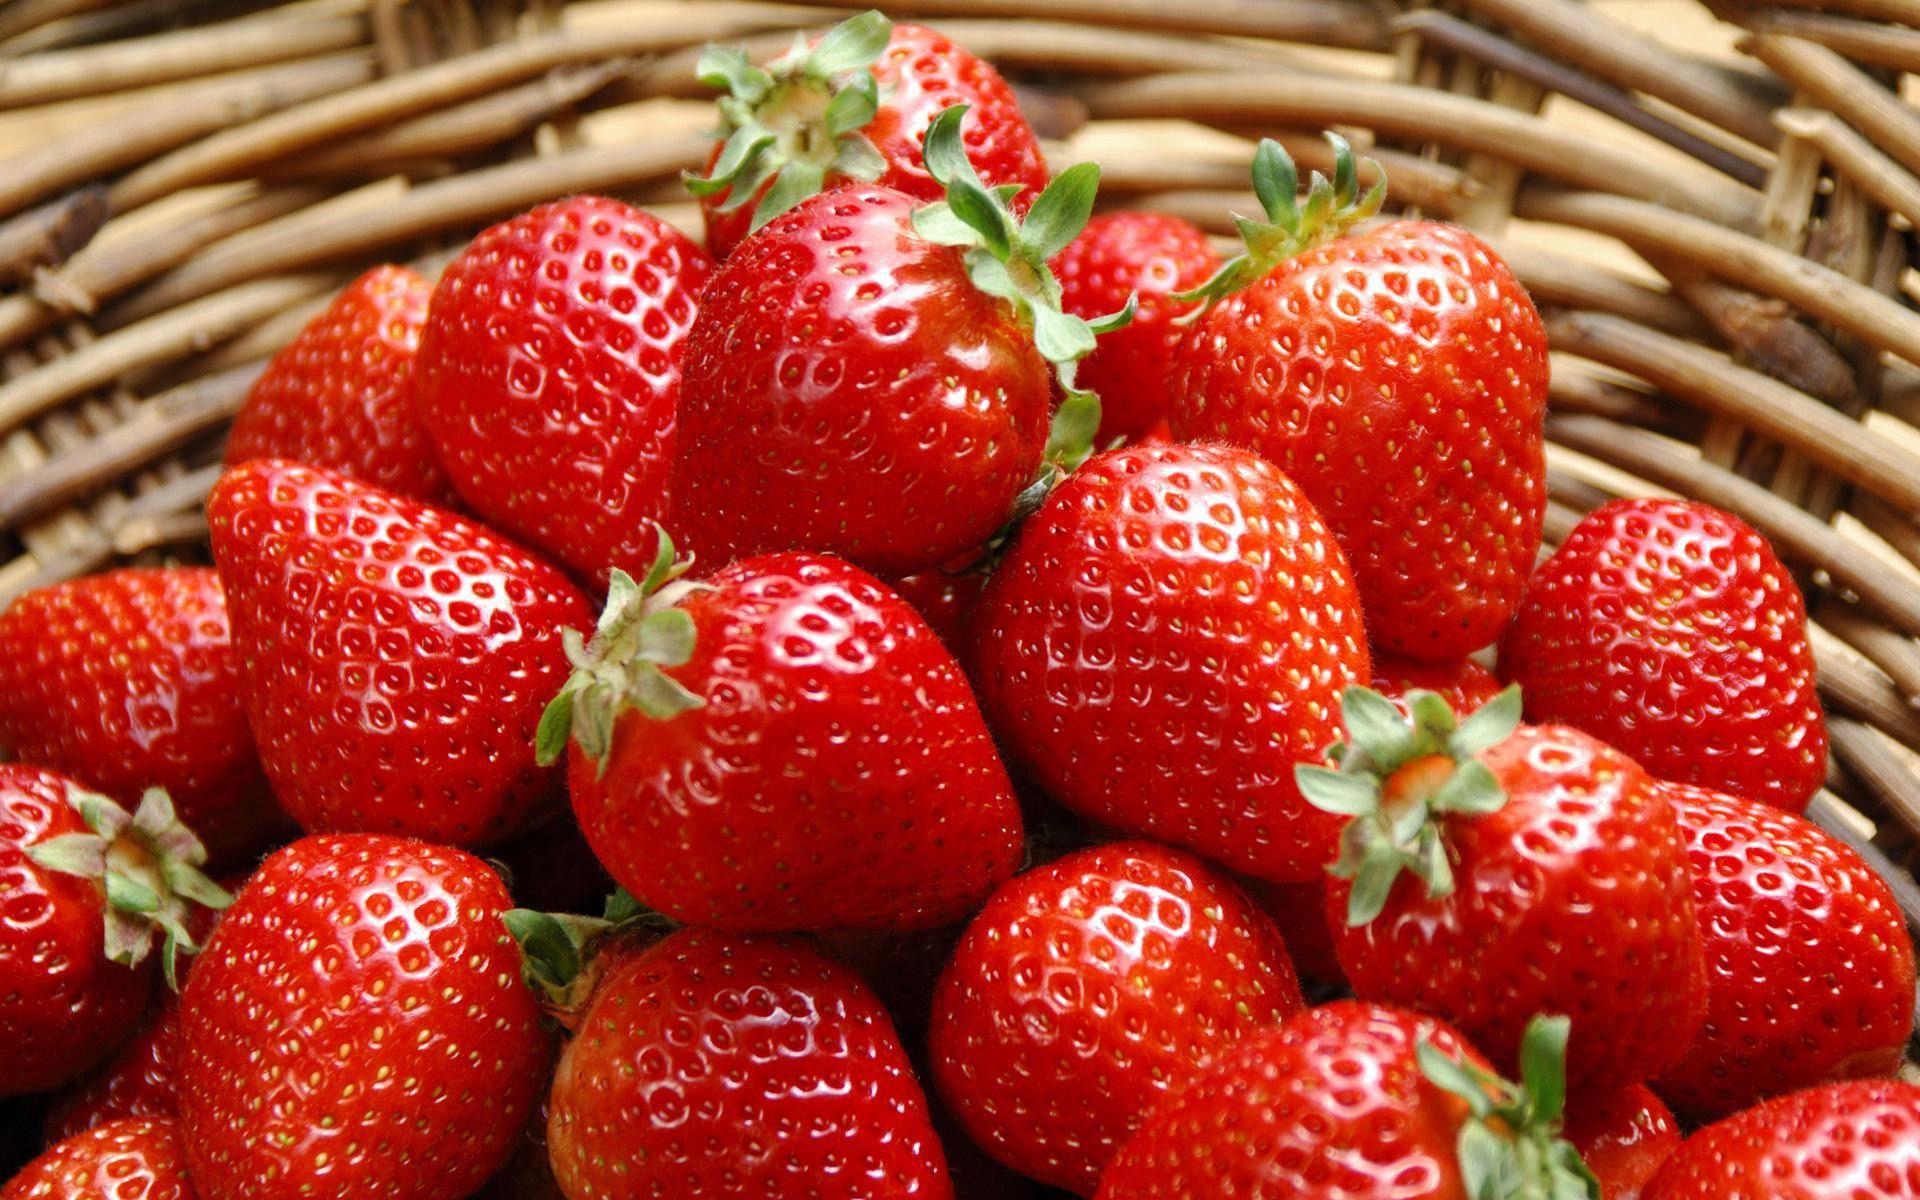 Українська компанія "Українська ягода" почне постачання полуниці у Францію. Термін дії міжнародного контракту складає три роки.